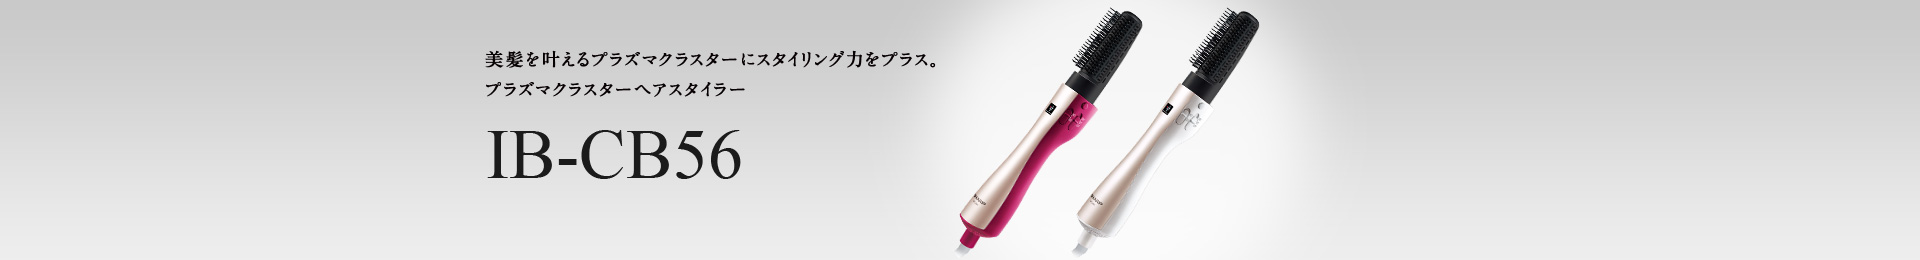 【新品未開封】シャープ IB-CB56-R プラズマクラスターヘアスタイラー